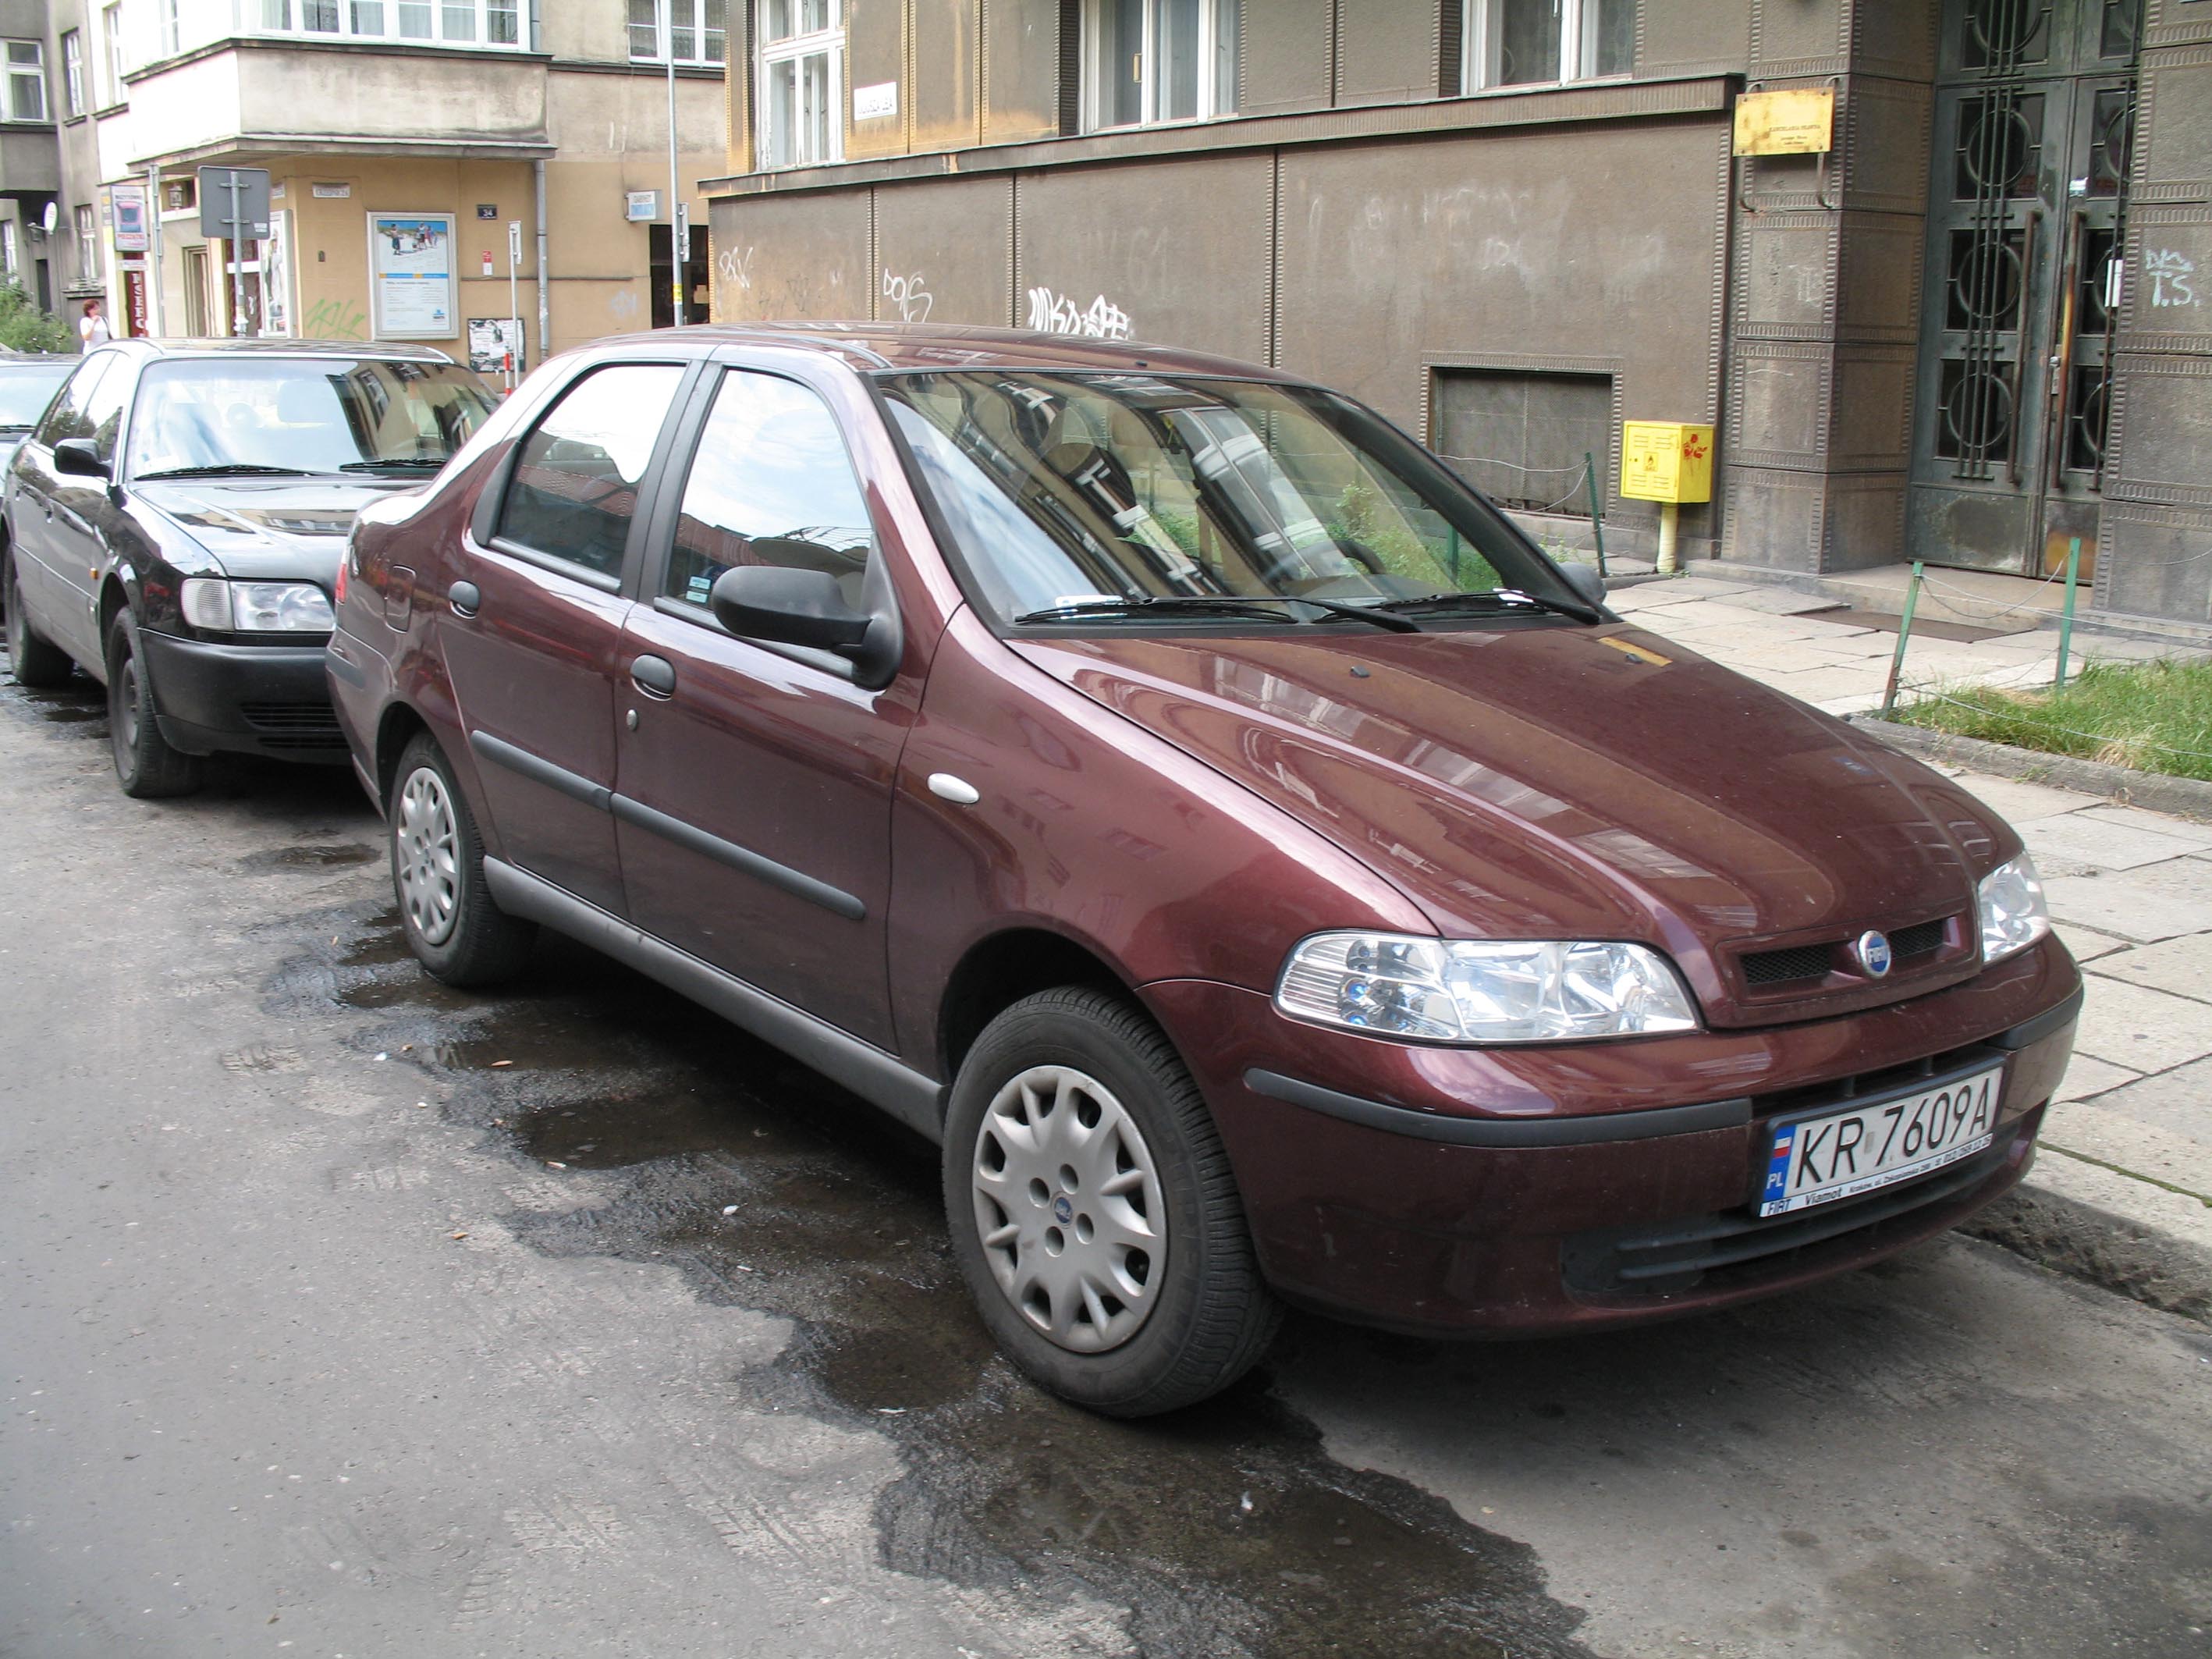 File:Fiat Albea in Krakow.jpg - Wikimedia Commons